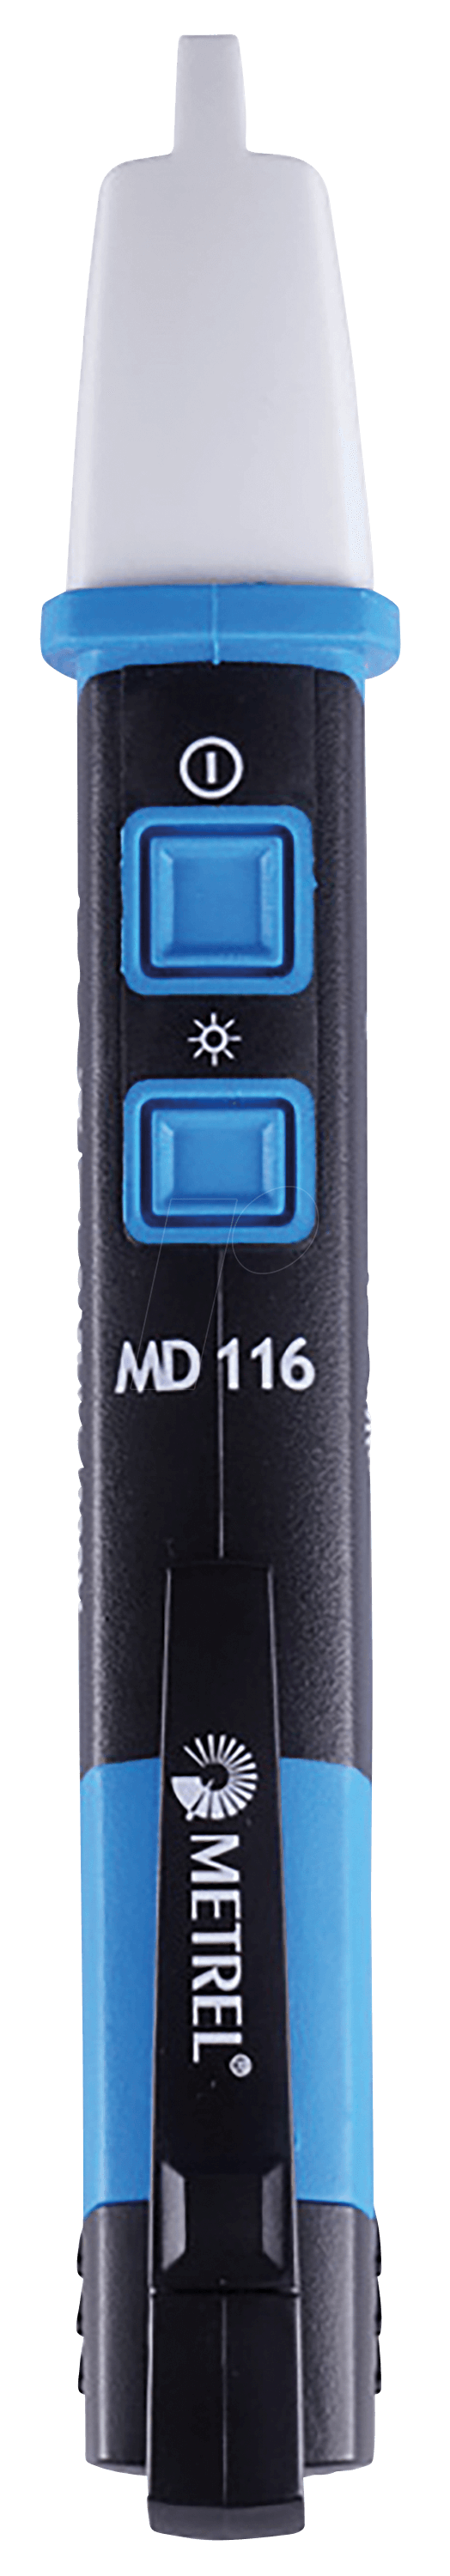 MD 116 - Spannungsprüfer MD 116, 12 - 1000 V AC von METREL